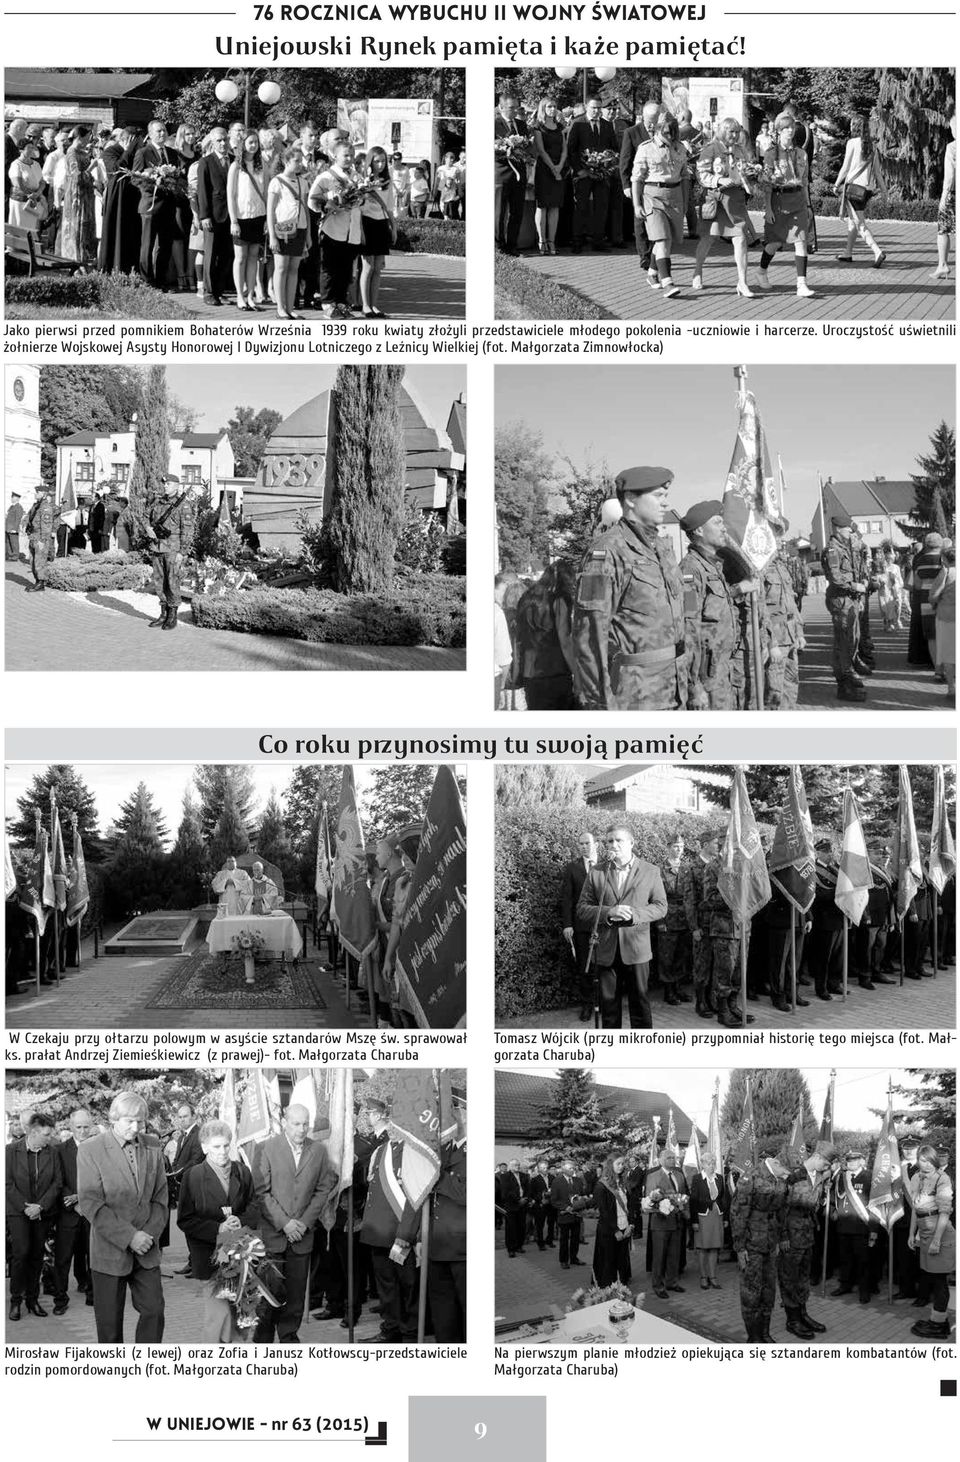 Uroczystość uświetnili żołnierze Wojskowej Asysty Honorowej I Dywizjonu Lotniczego z Leźnicy Wielkiej (fot.